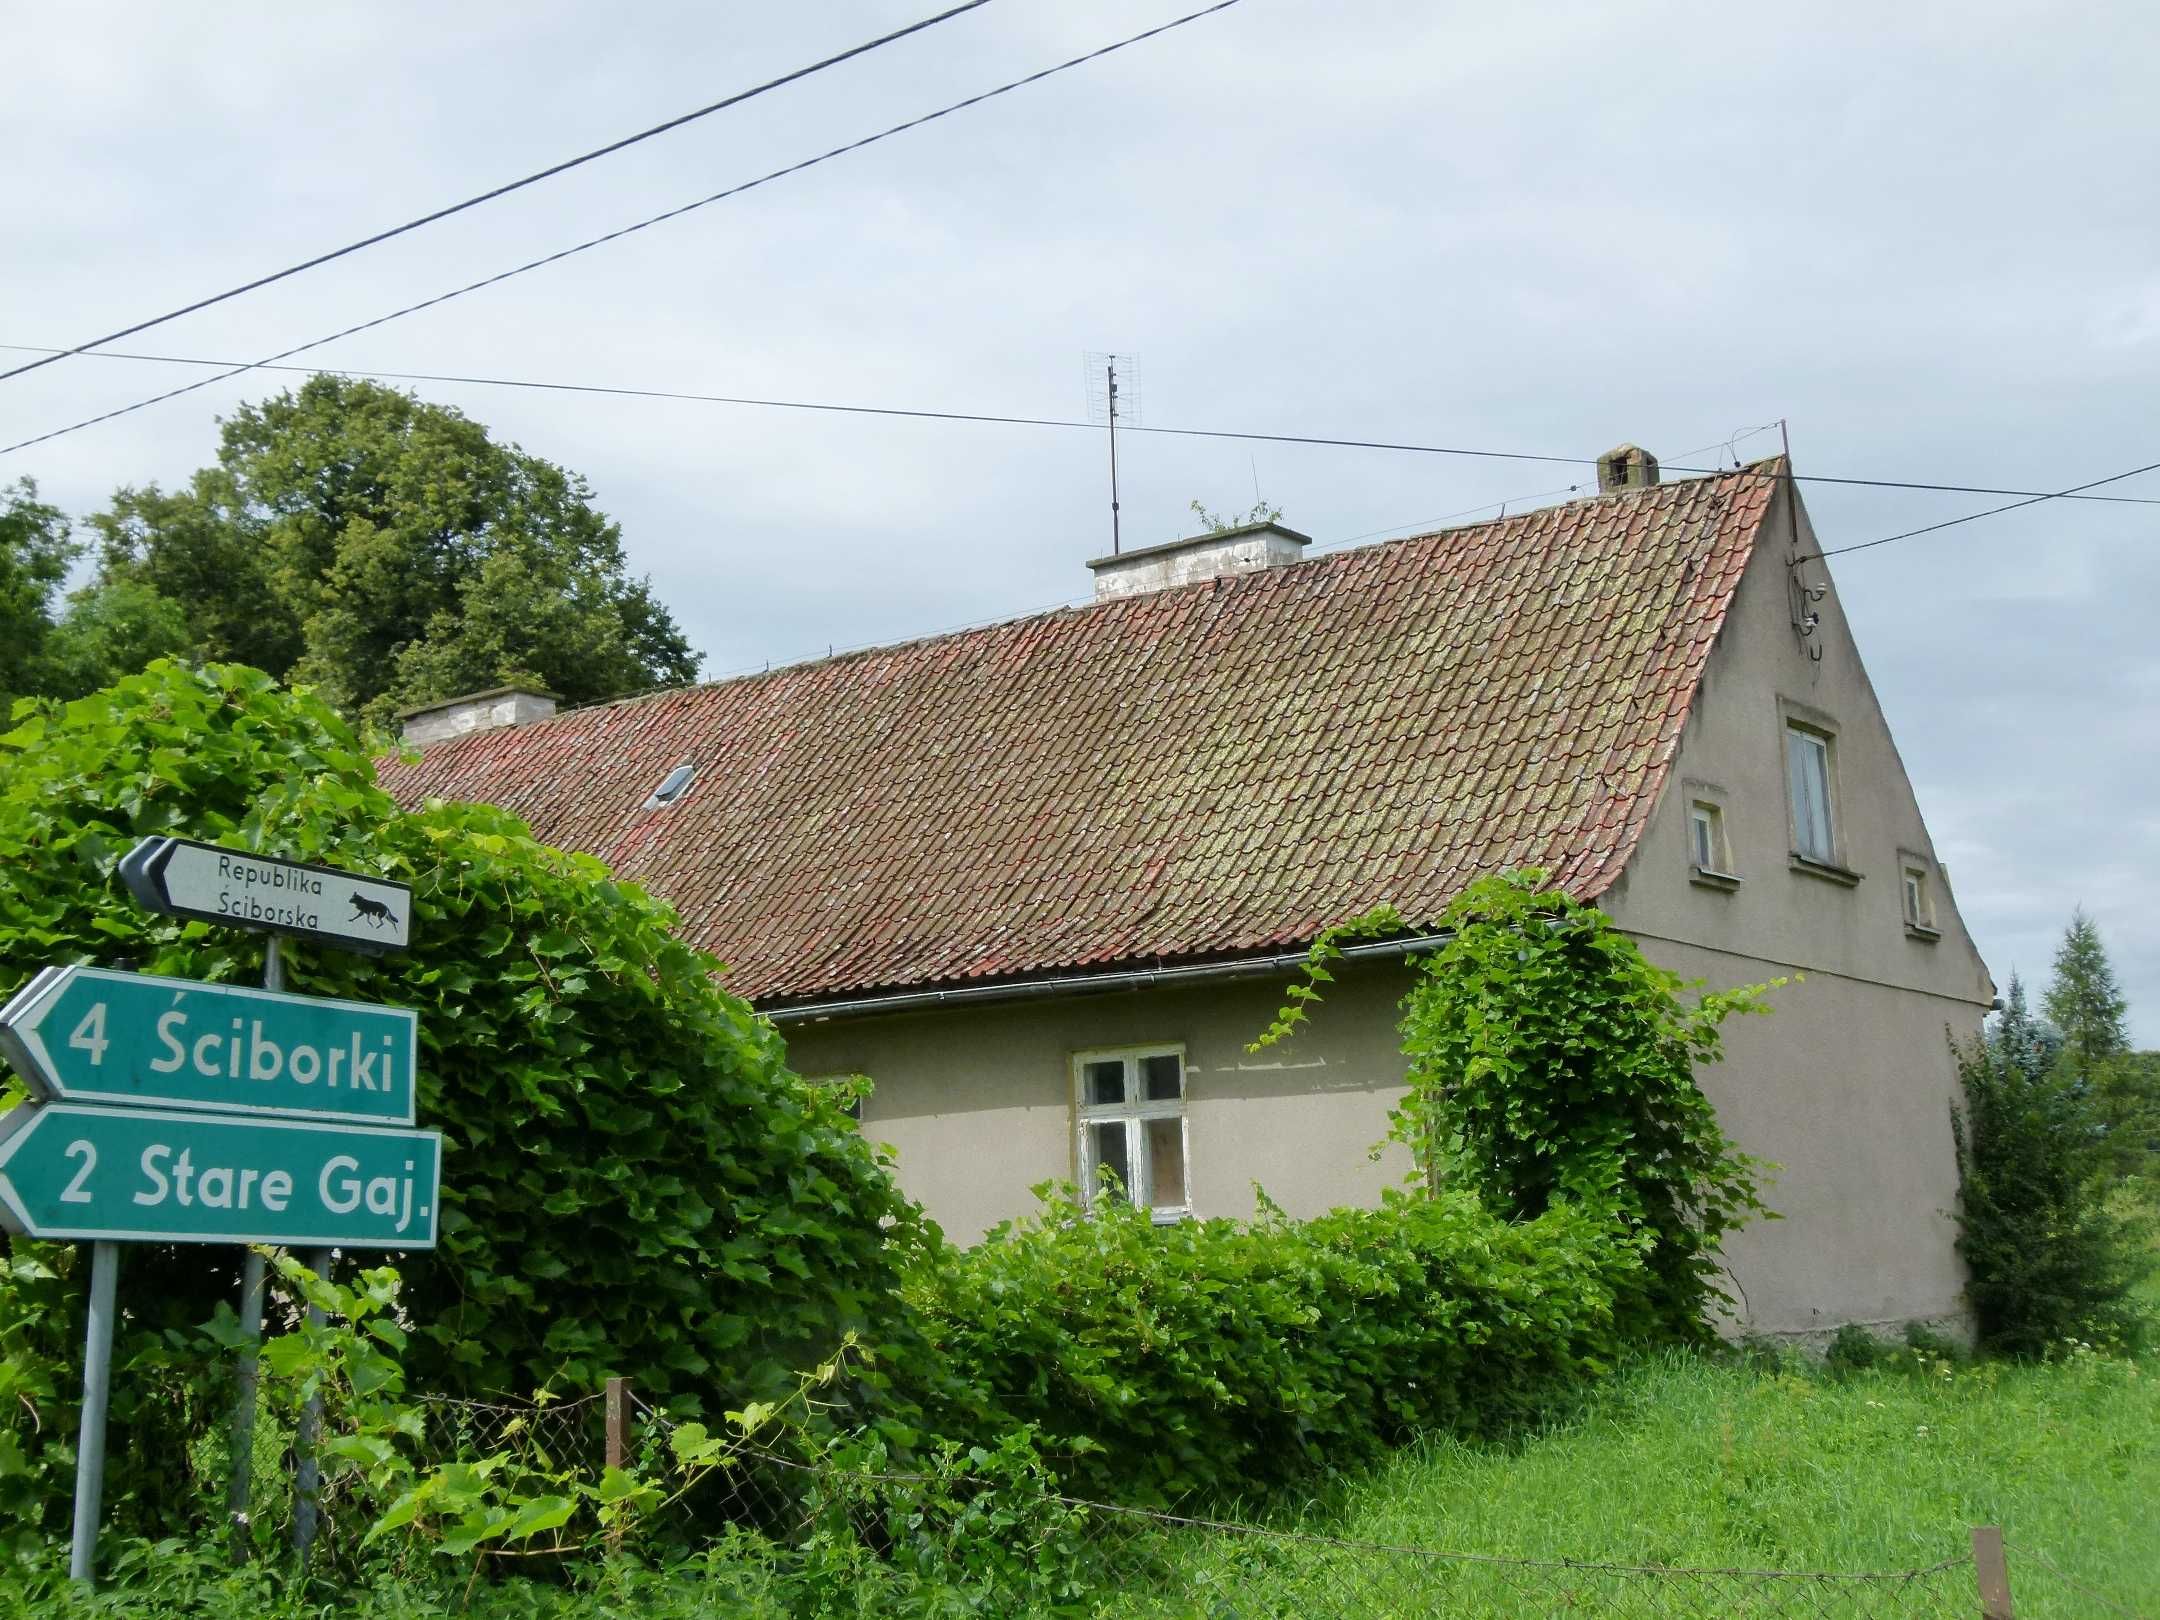 Dom dwurodzinny w klimatycznej mazurskiej wsi.